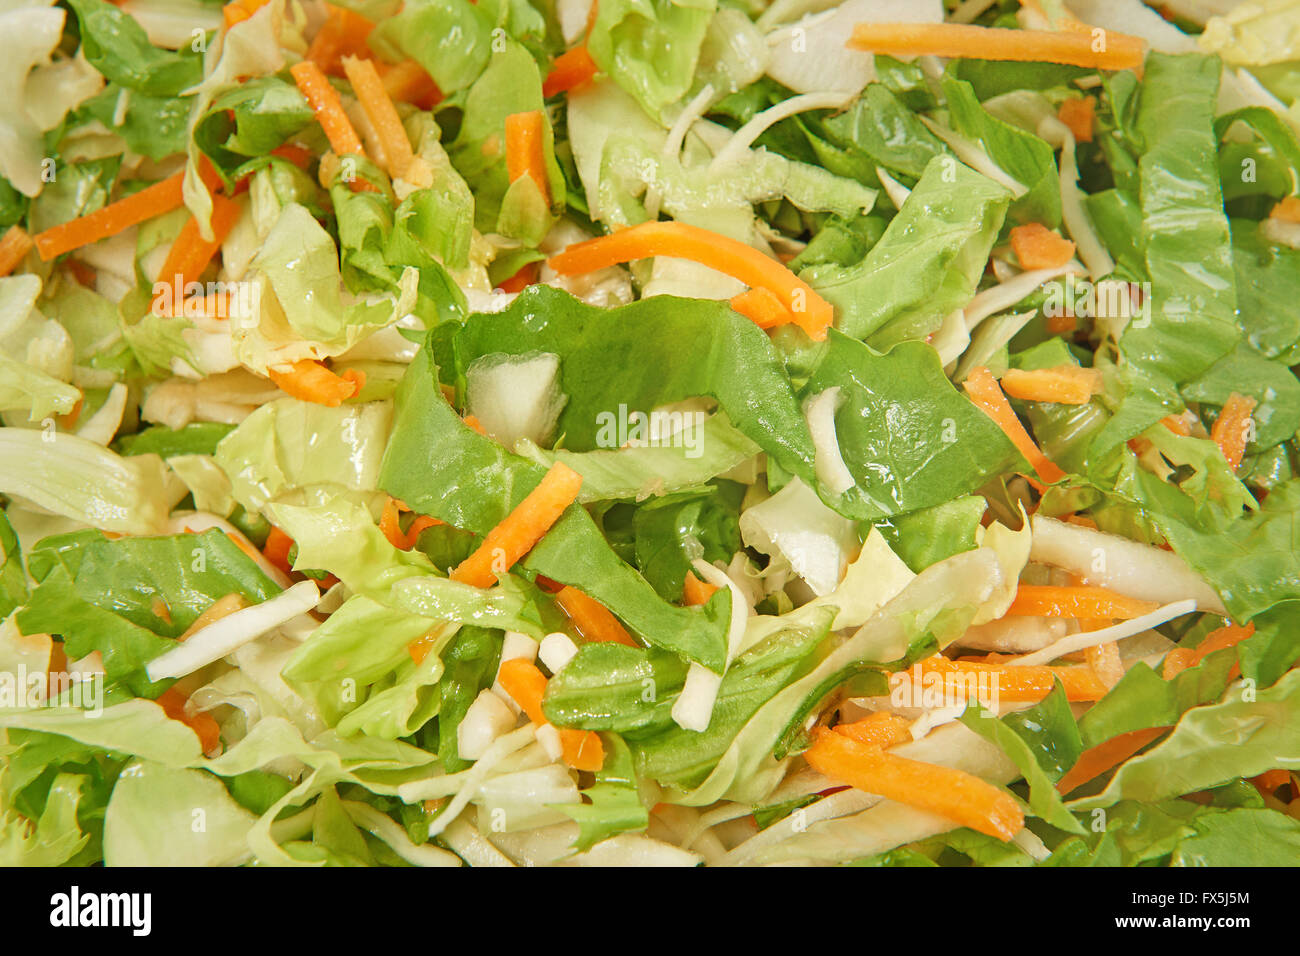 Primo piano immagine ecologica di trito di insalata mista Foto Stock